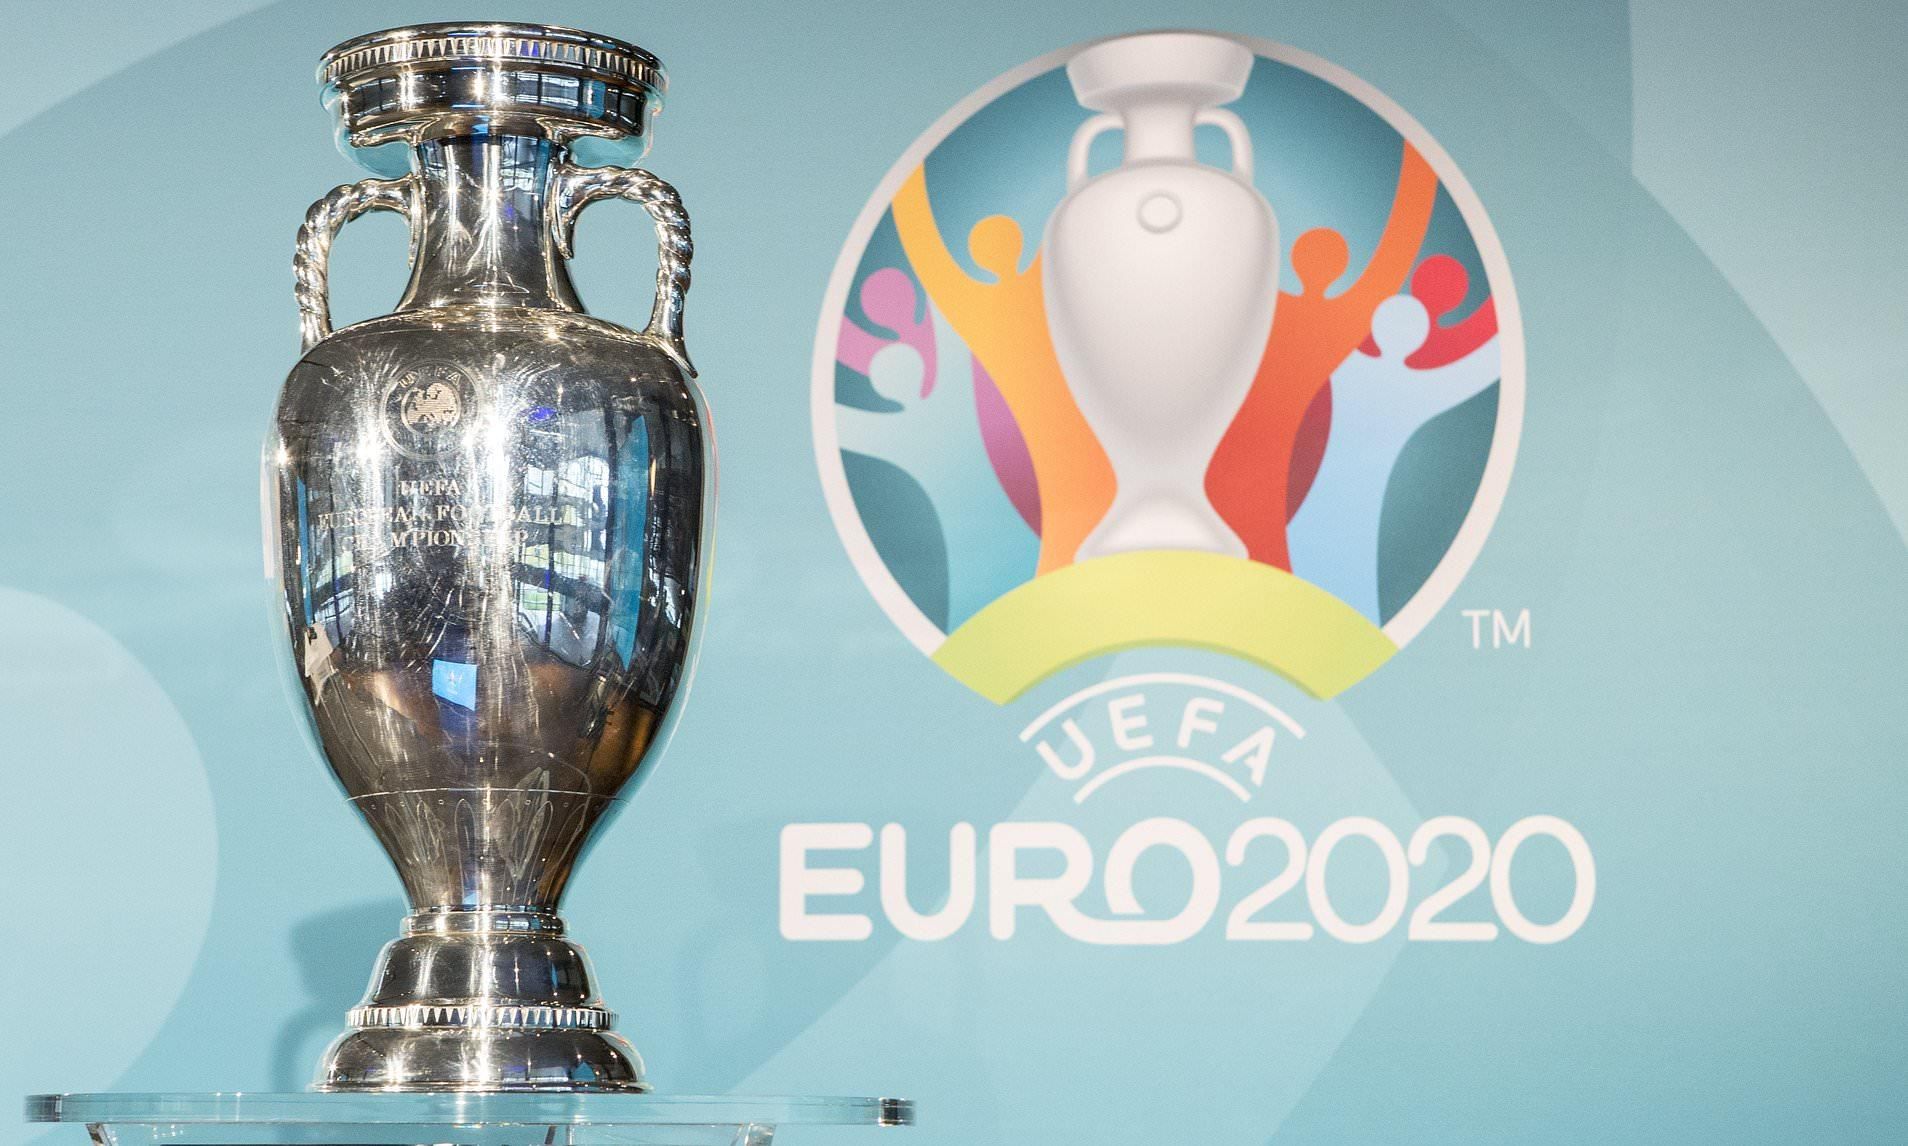 Євро 2020 року – огляд матчів 08.09.2019 – кваліфікація Євро 2020